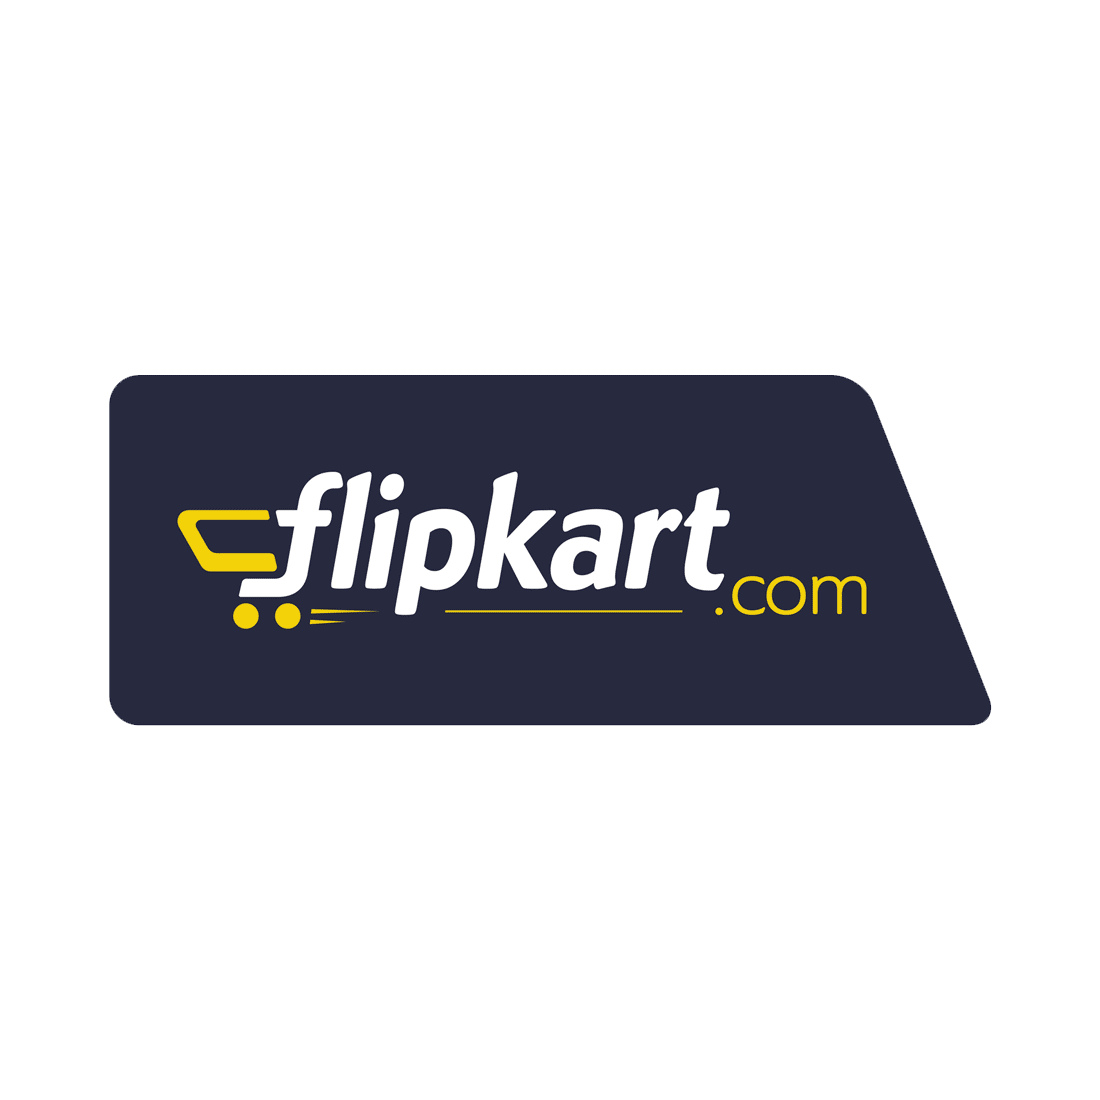 Flipkart Transparent Clipart